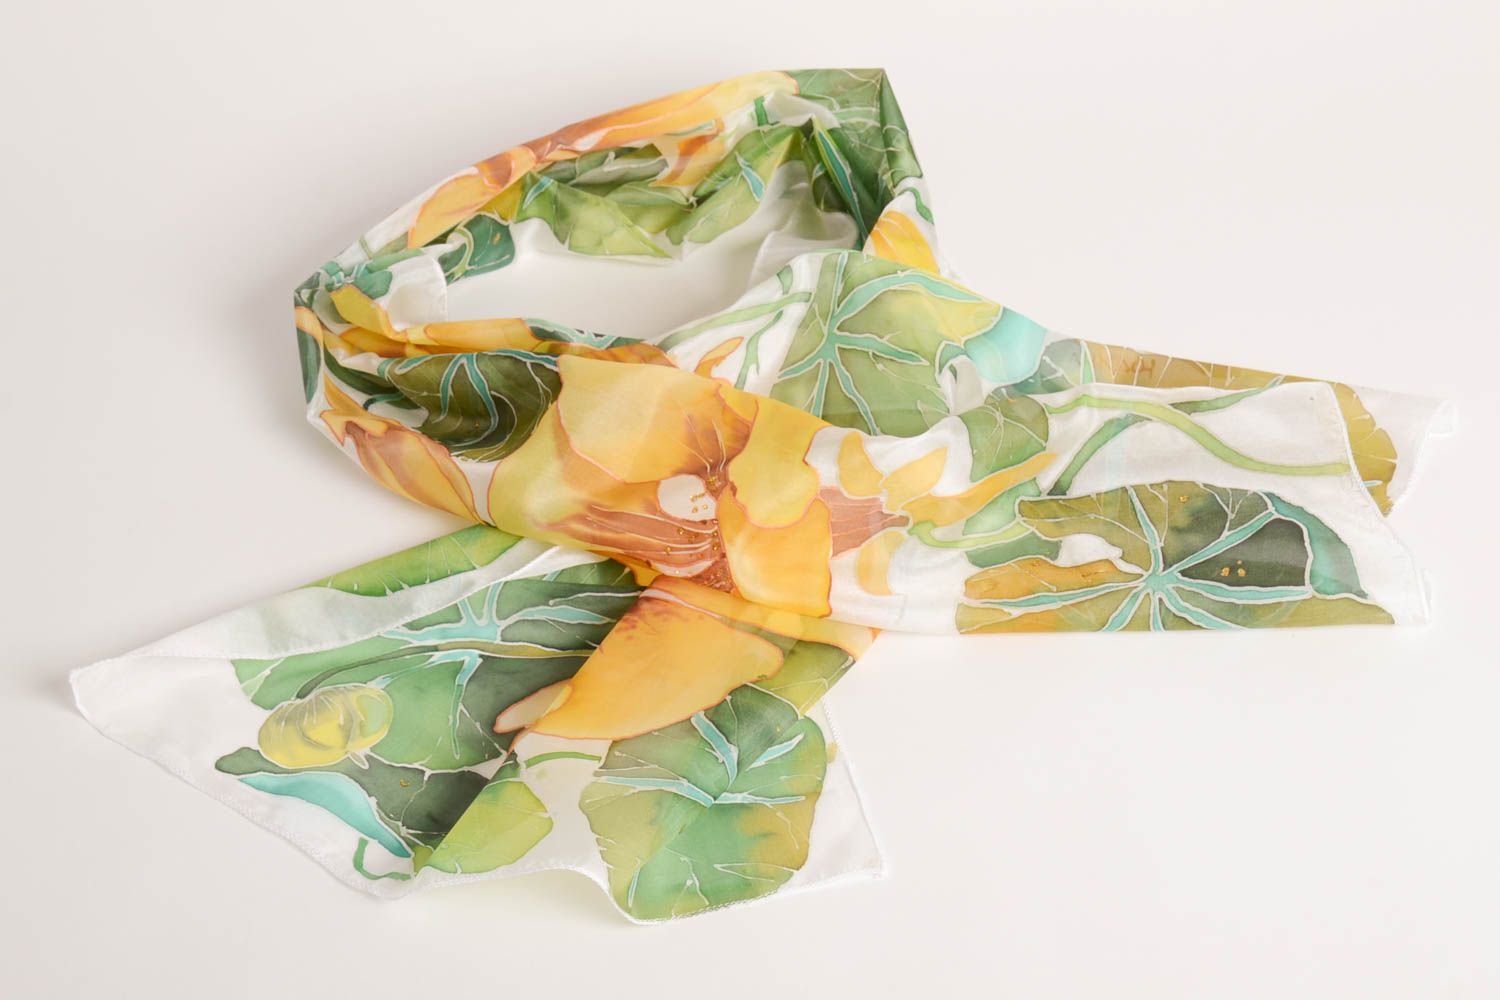 Палантин батик ручной работы стильный платок на плечи красивый шелковый платок фото 1